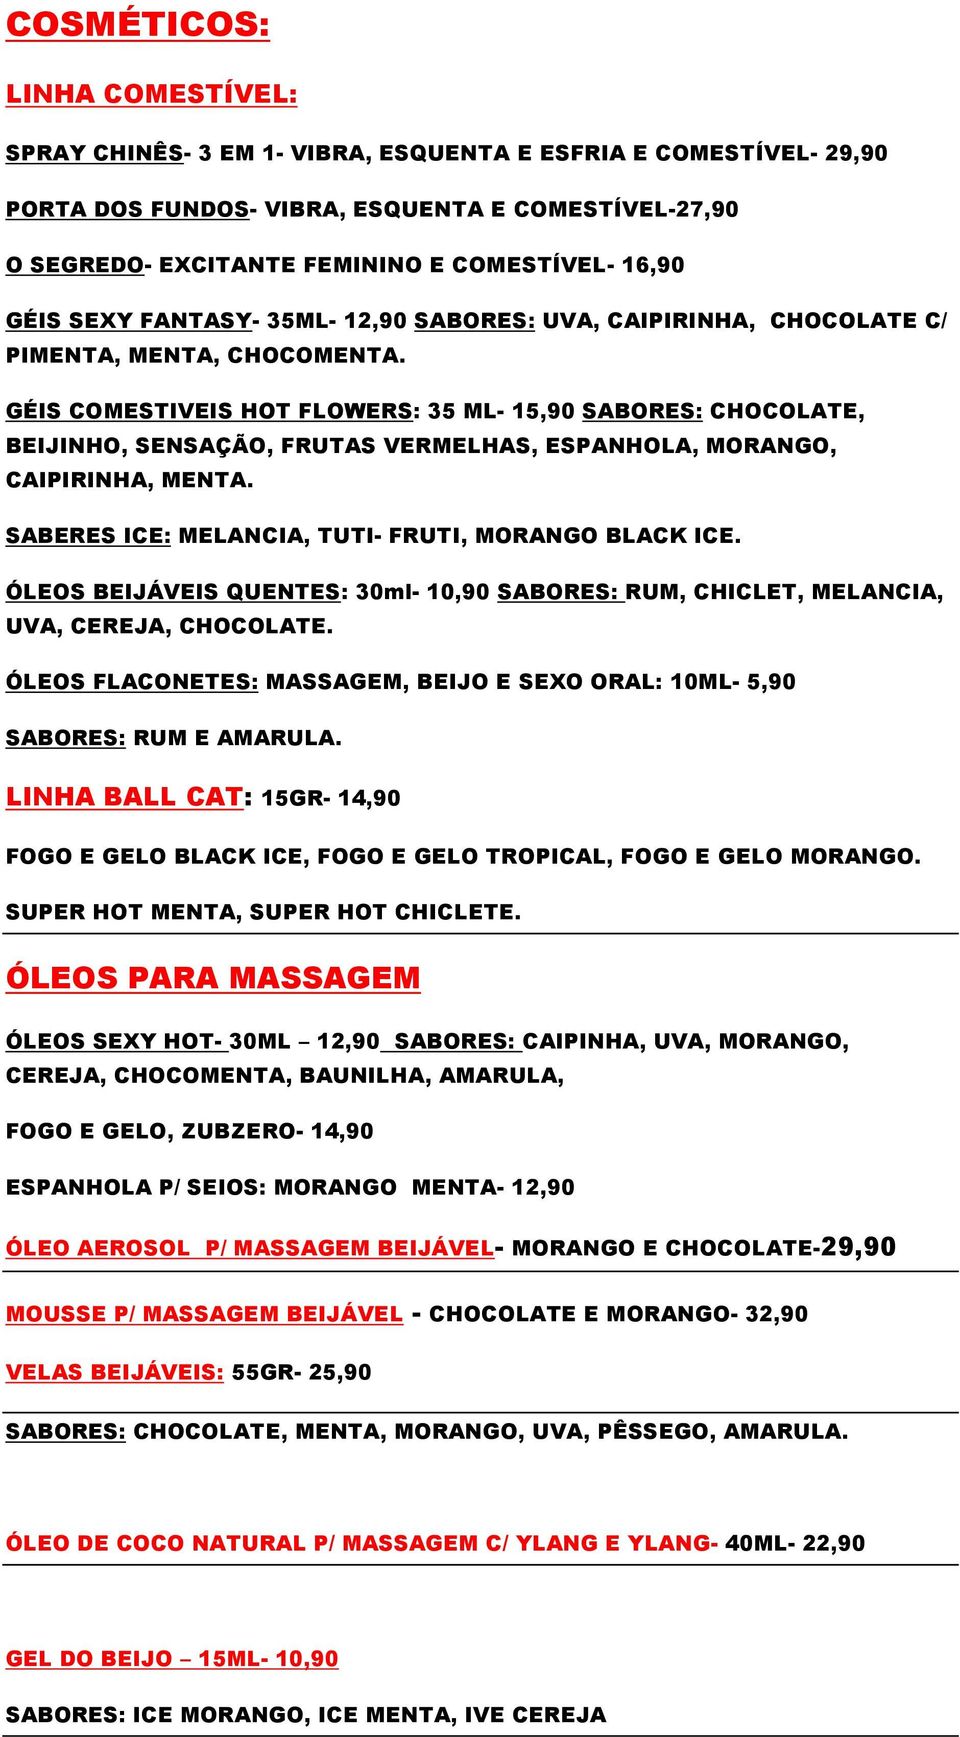 GÉIS COMESTIVEIS HOT FLOWERS: 35 ML- 15,90 SABORES: CHOCOLATE, BEIJINHO, SENSAÇÃO, FRUTAS VERMELHAS, ESPANHOLA, MORANGO, CAIPIRINHA, MENTA. SABERES ICE: MELANCIA, TUTI- FRUTI, MORANGO BLACK ICE.